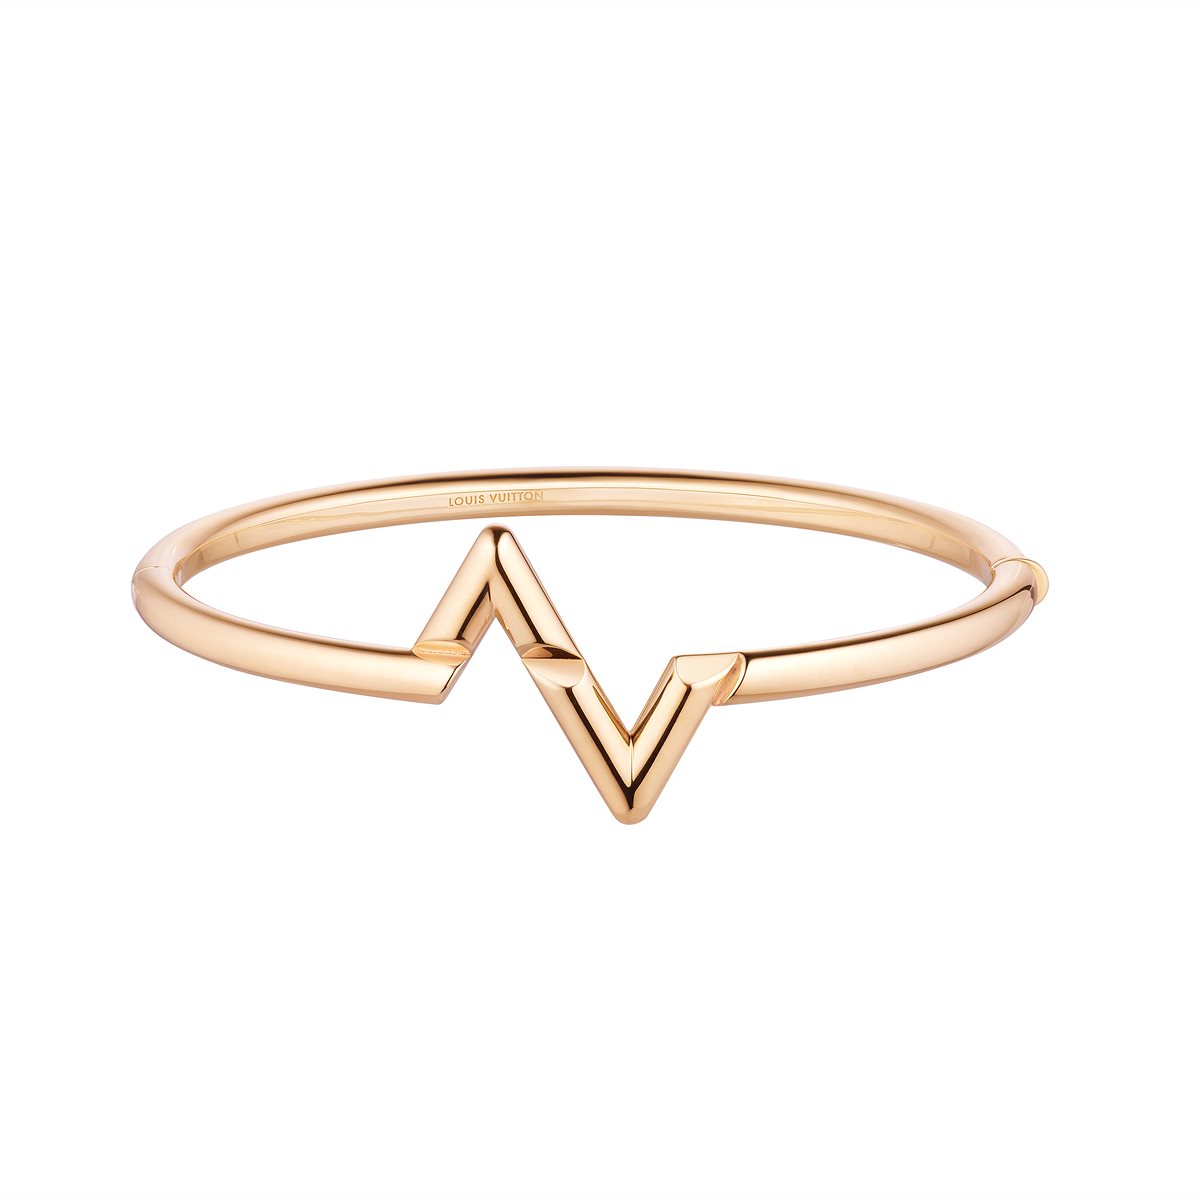 LV_LV VOLT_Upside Down bracelet in pink gold